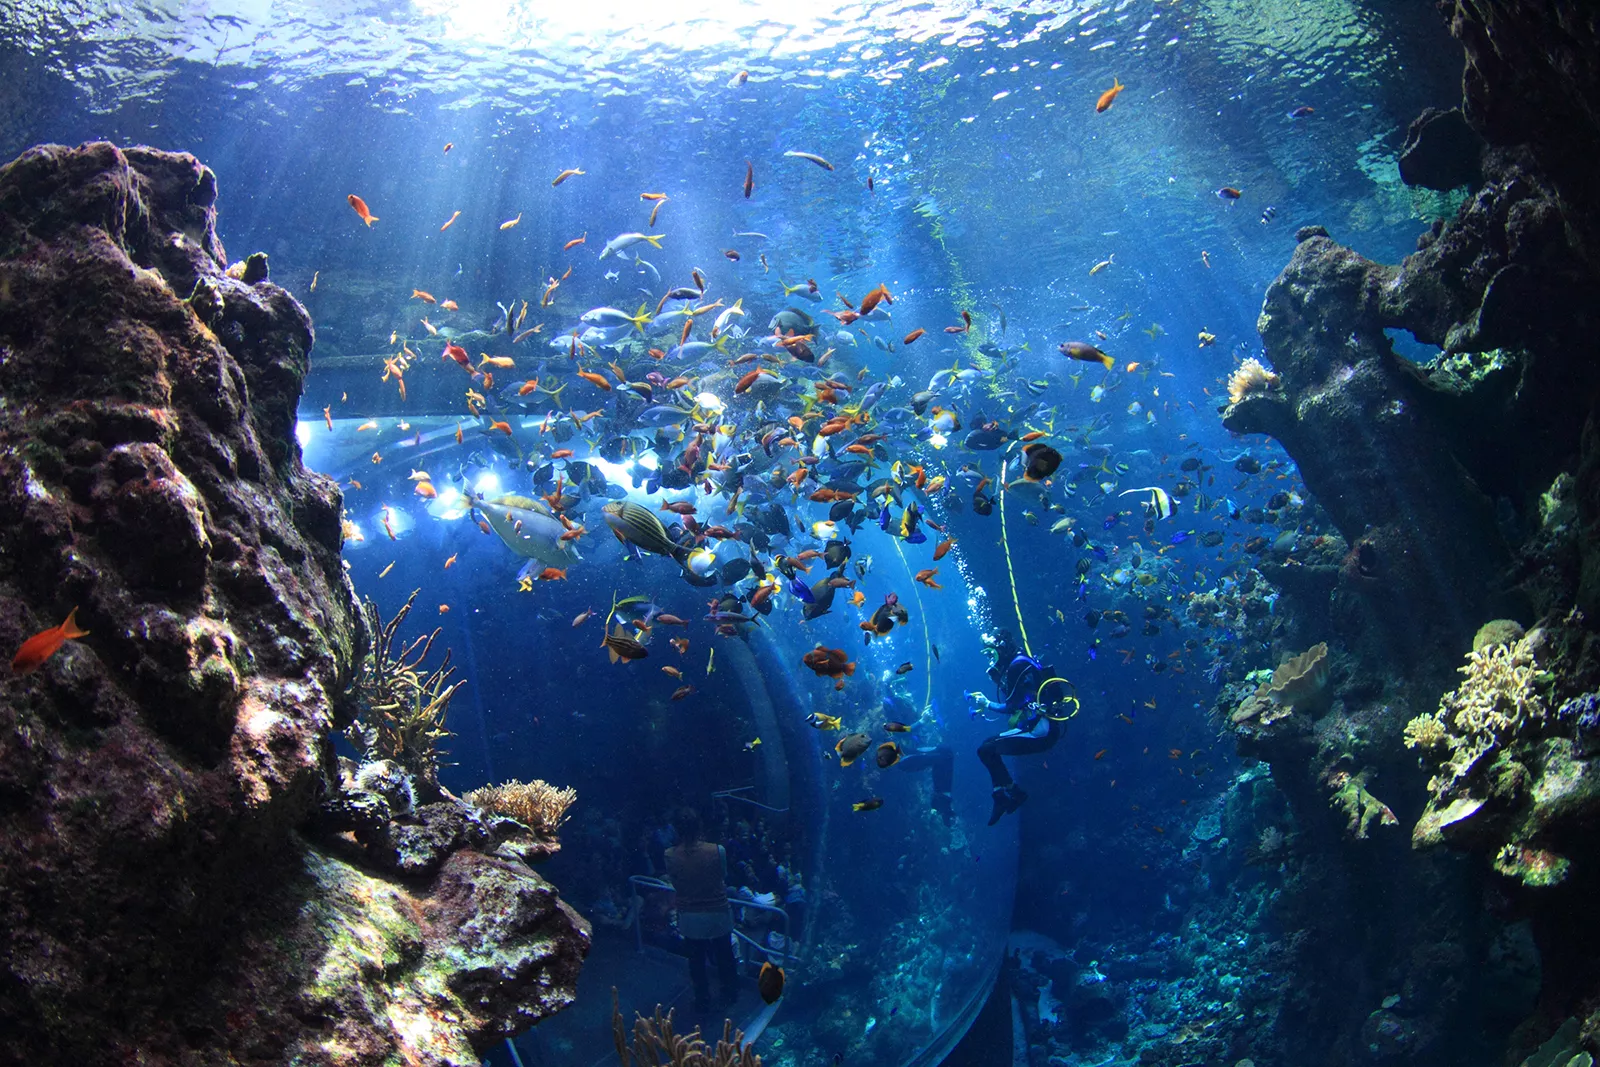 Aquarium Medellin in Colombia, South America | Aquariums & Oceanariums - Rated 4.1